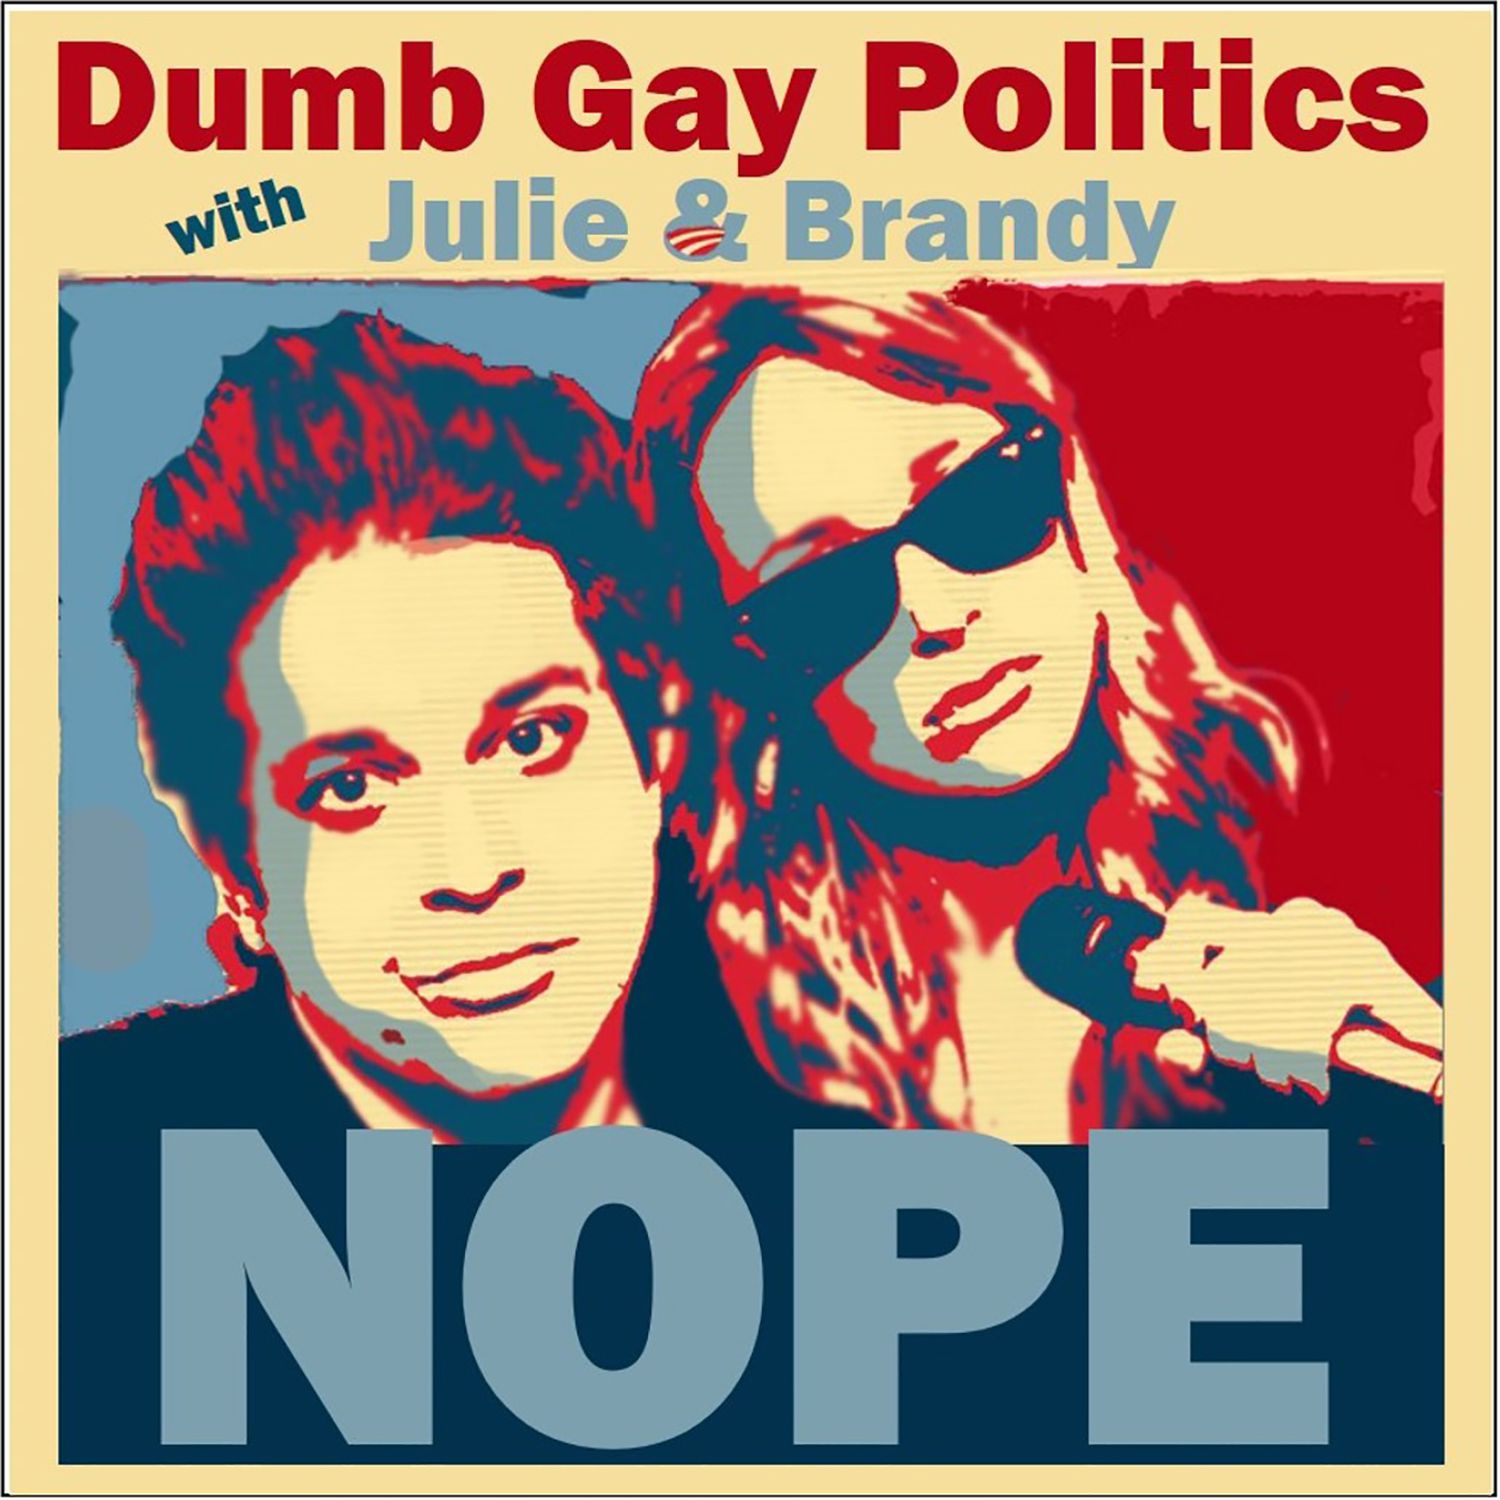 Dumb Gay Politics Podcast Cover - Square